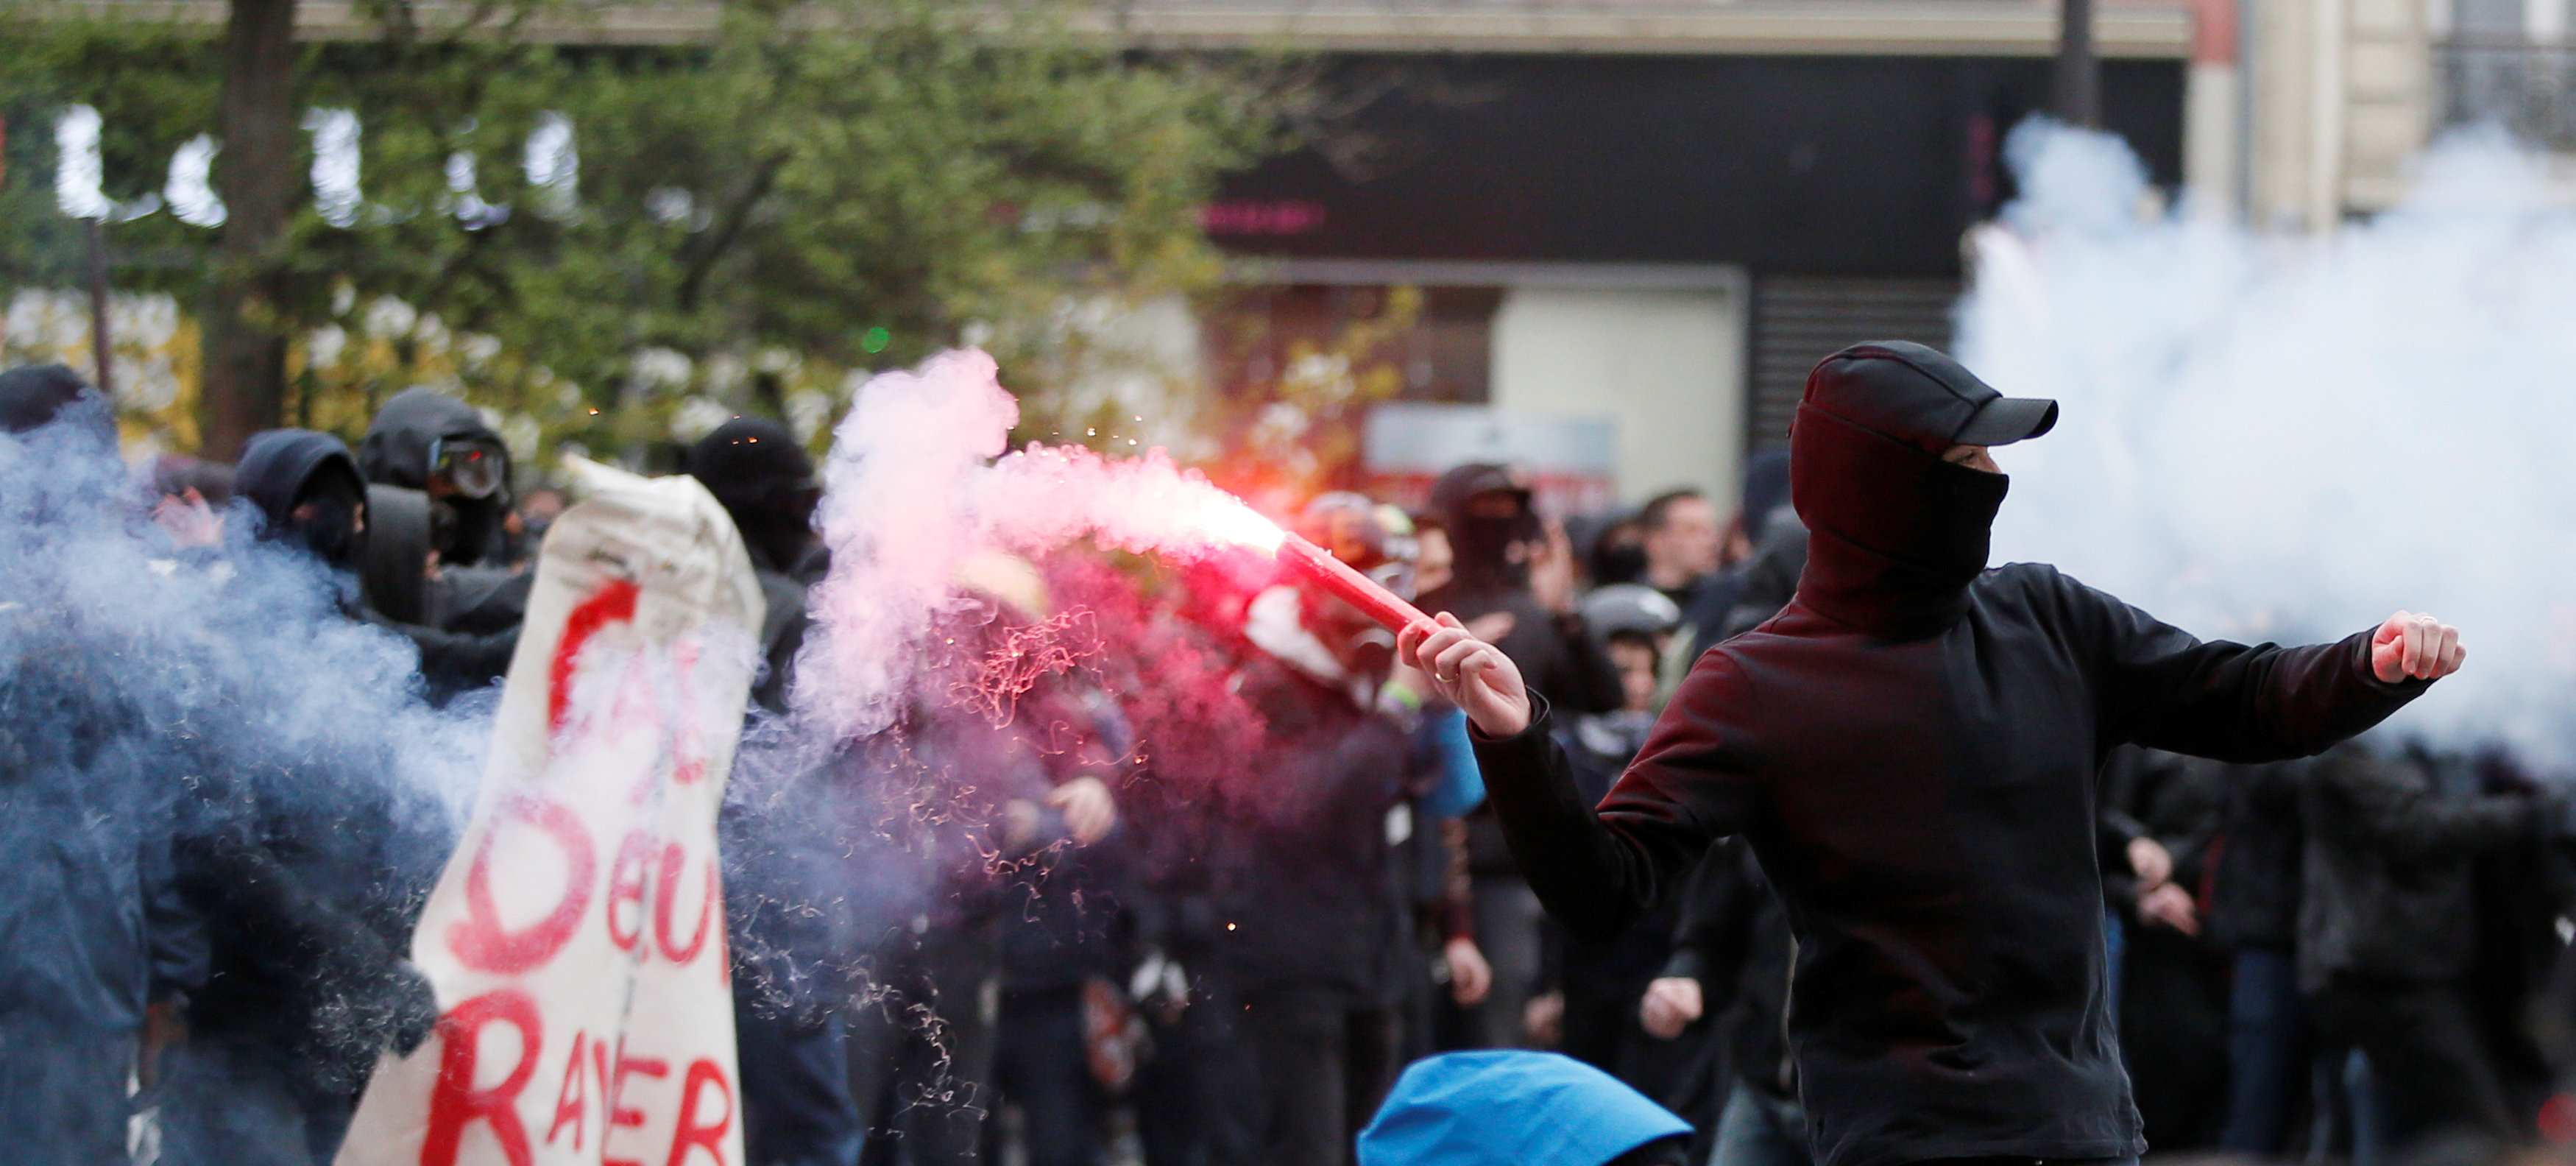 Un hombre lanza una bengala durante un enfrentamientos en una manifestación contra la brutalidad policial en París, Francia. (REUTERS)